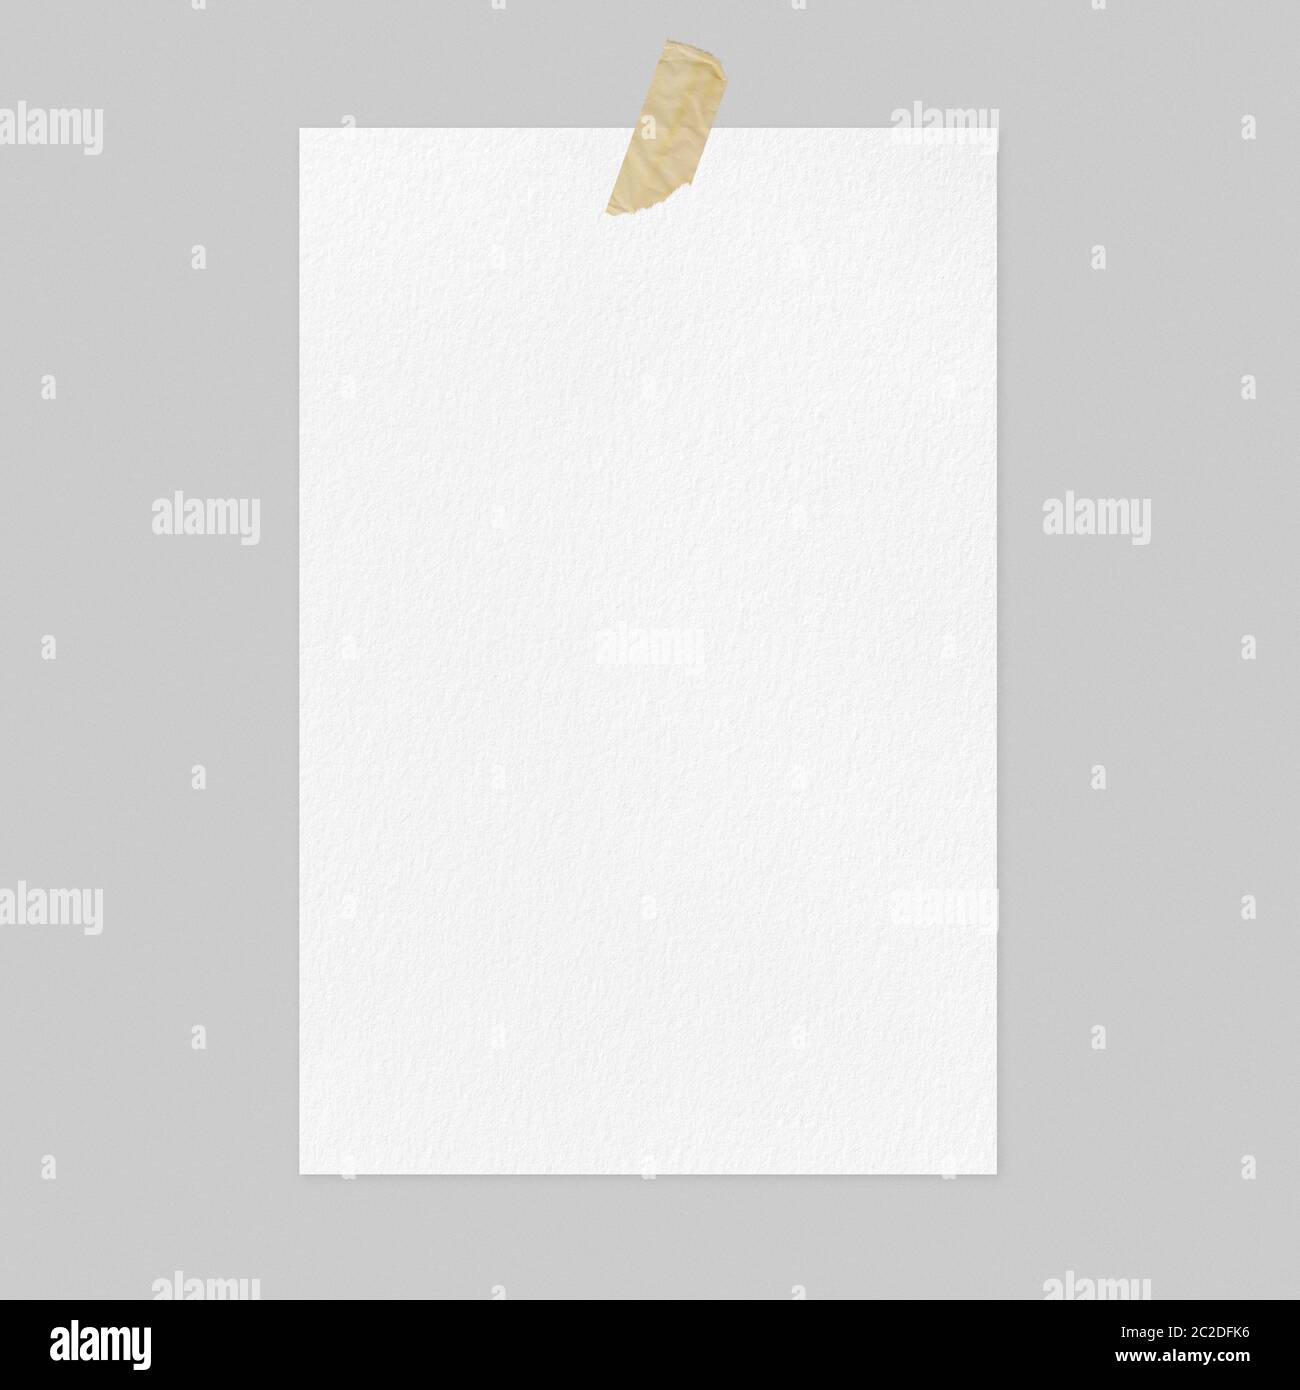 Vuoto foglio di carta bianco su sfondo grigio chiaro marrone con nastro adesivo, vista anteriore a4 mockup poster Foto Stock